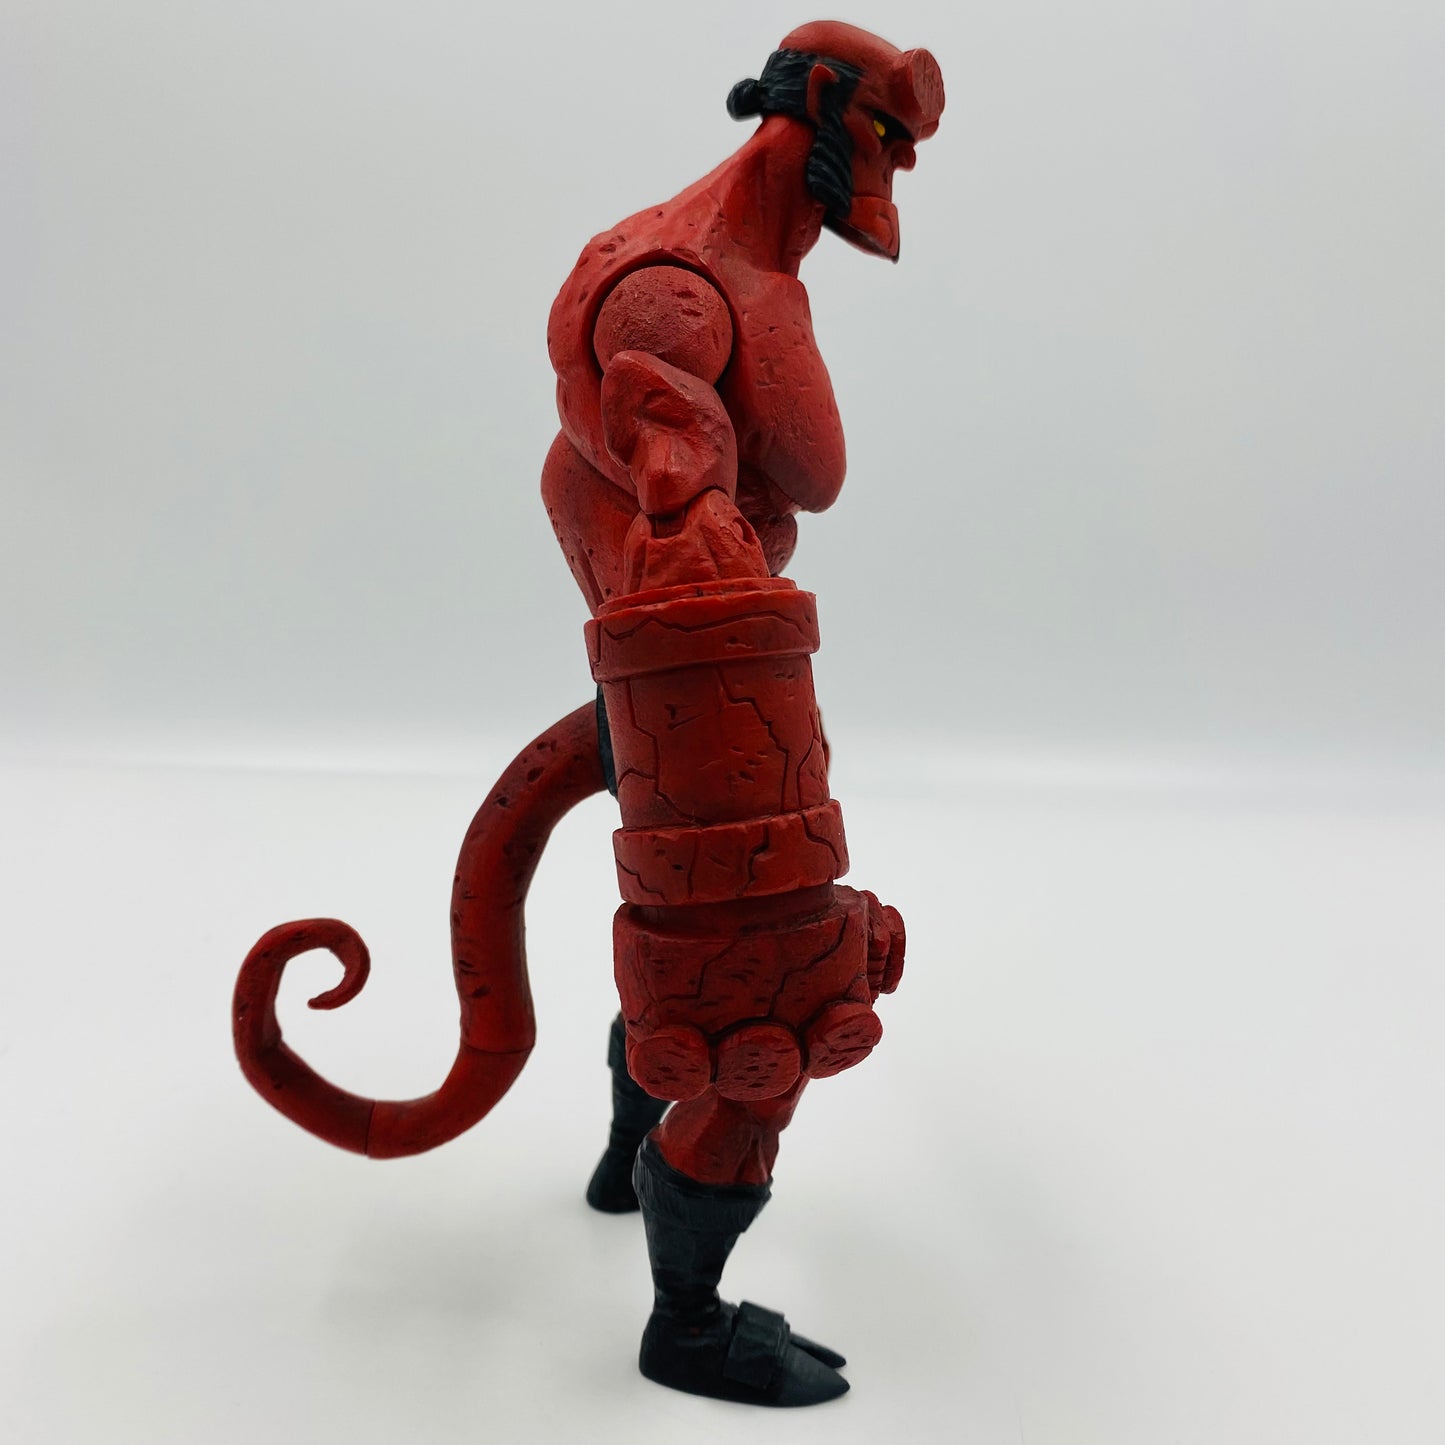 Hellboy - comic version loose 8" action figure (2005) Mezco